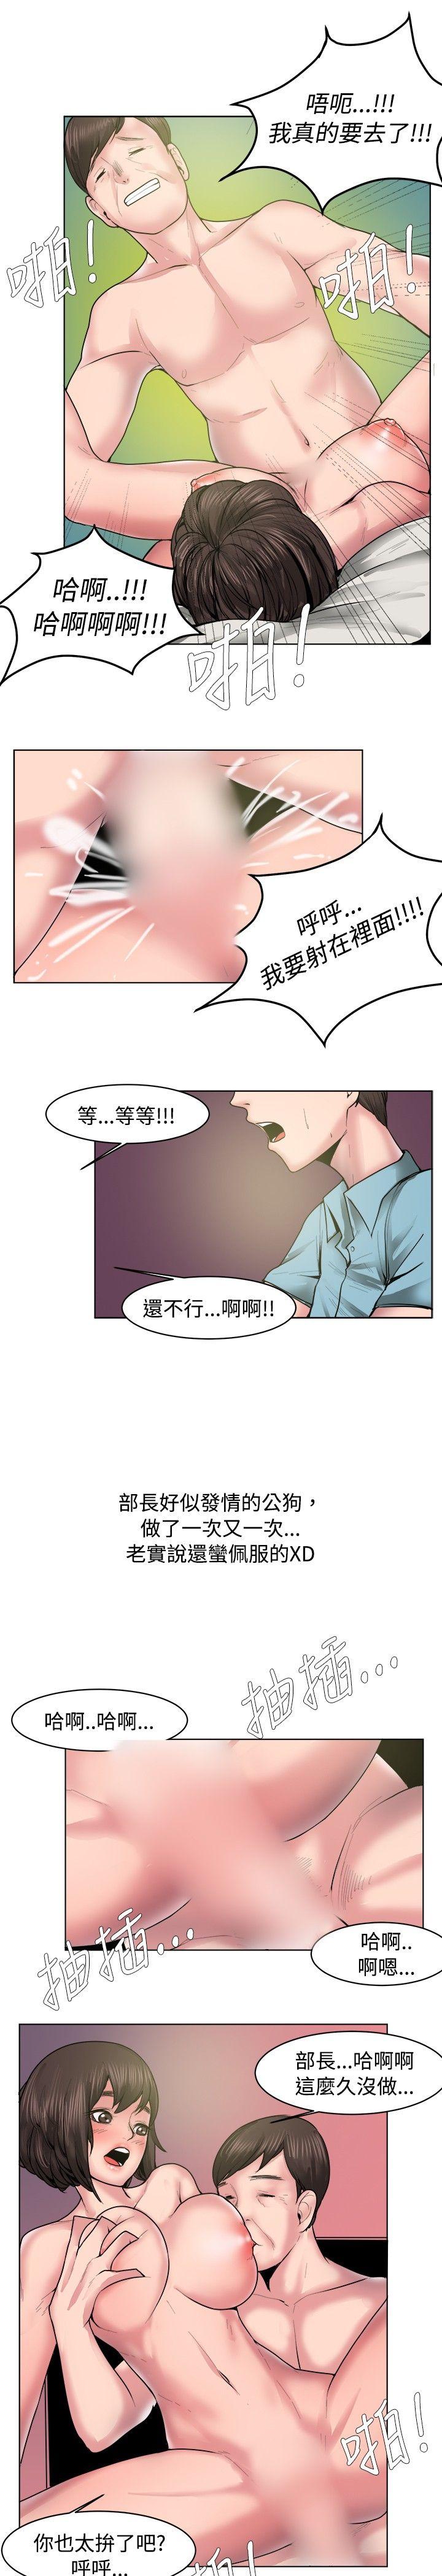 秘密Story  女同事的不伦恋(下) 漫画图片9.jpg